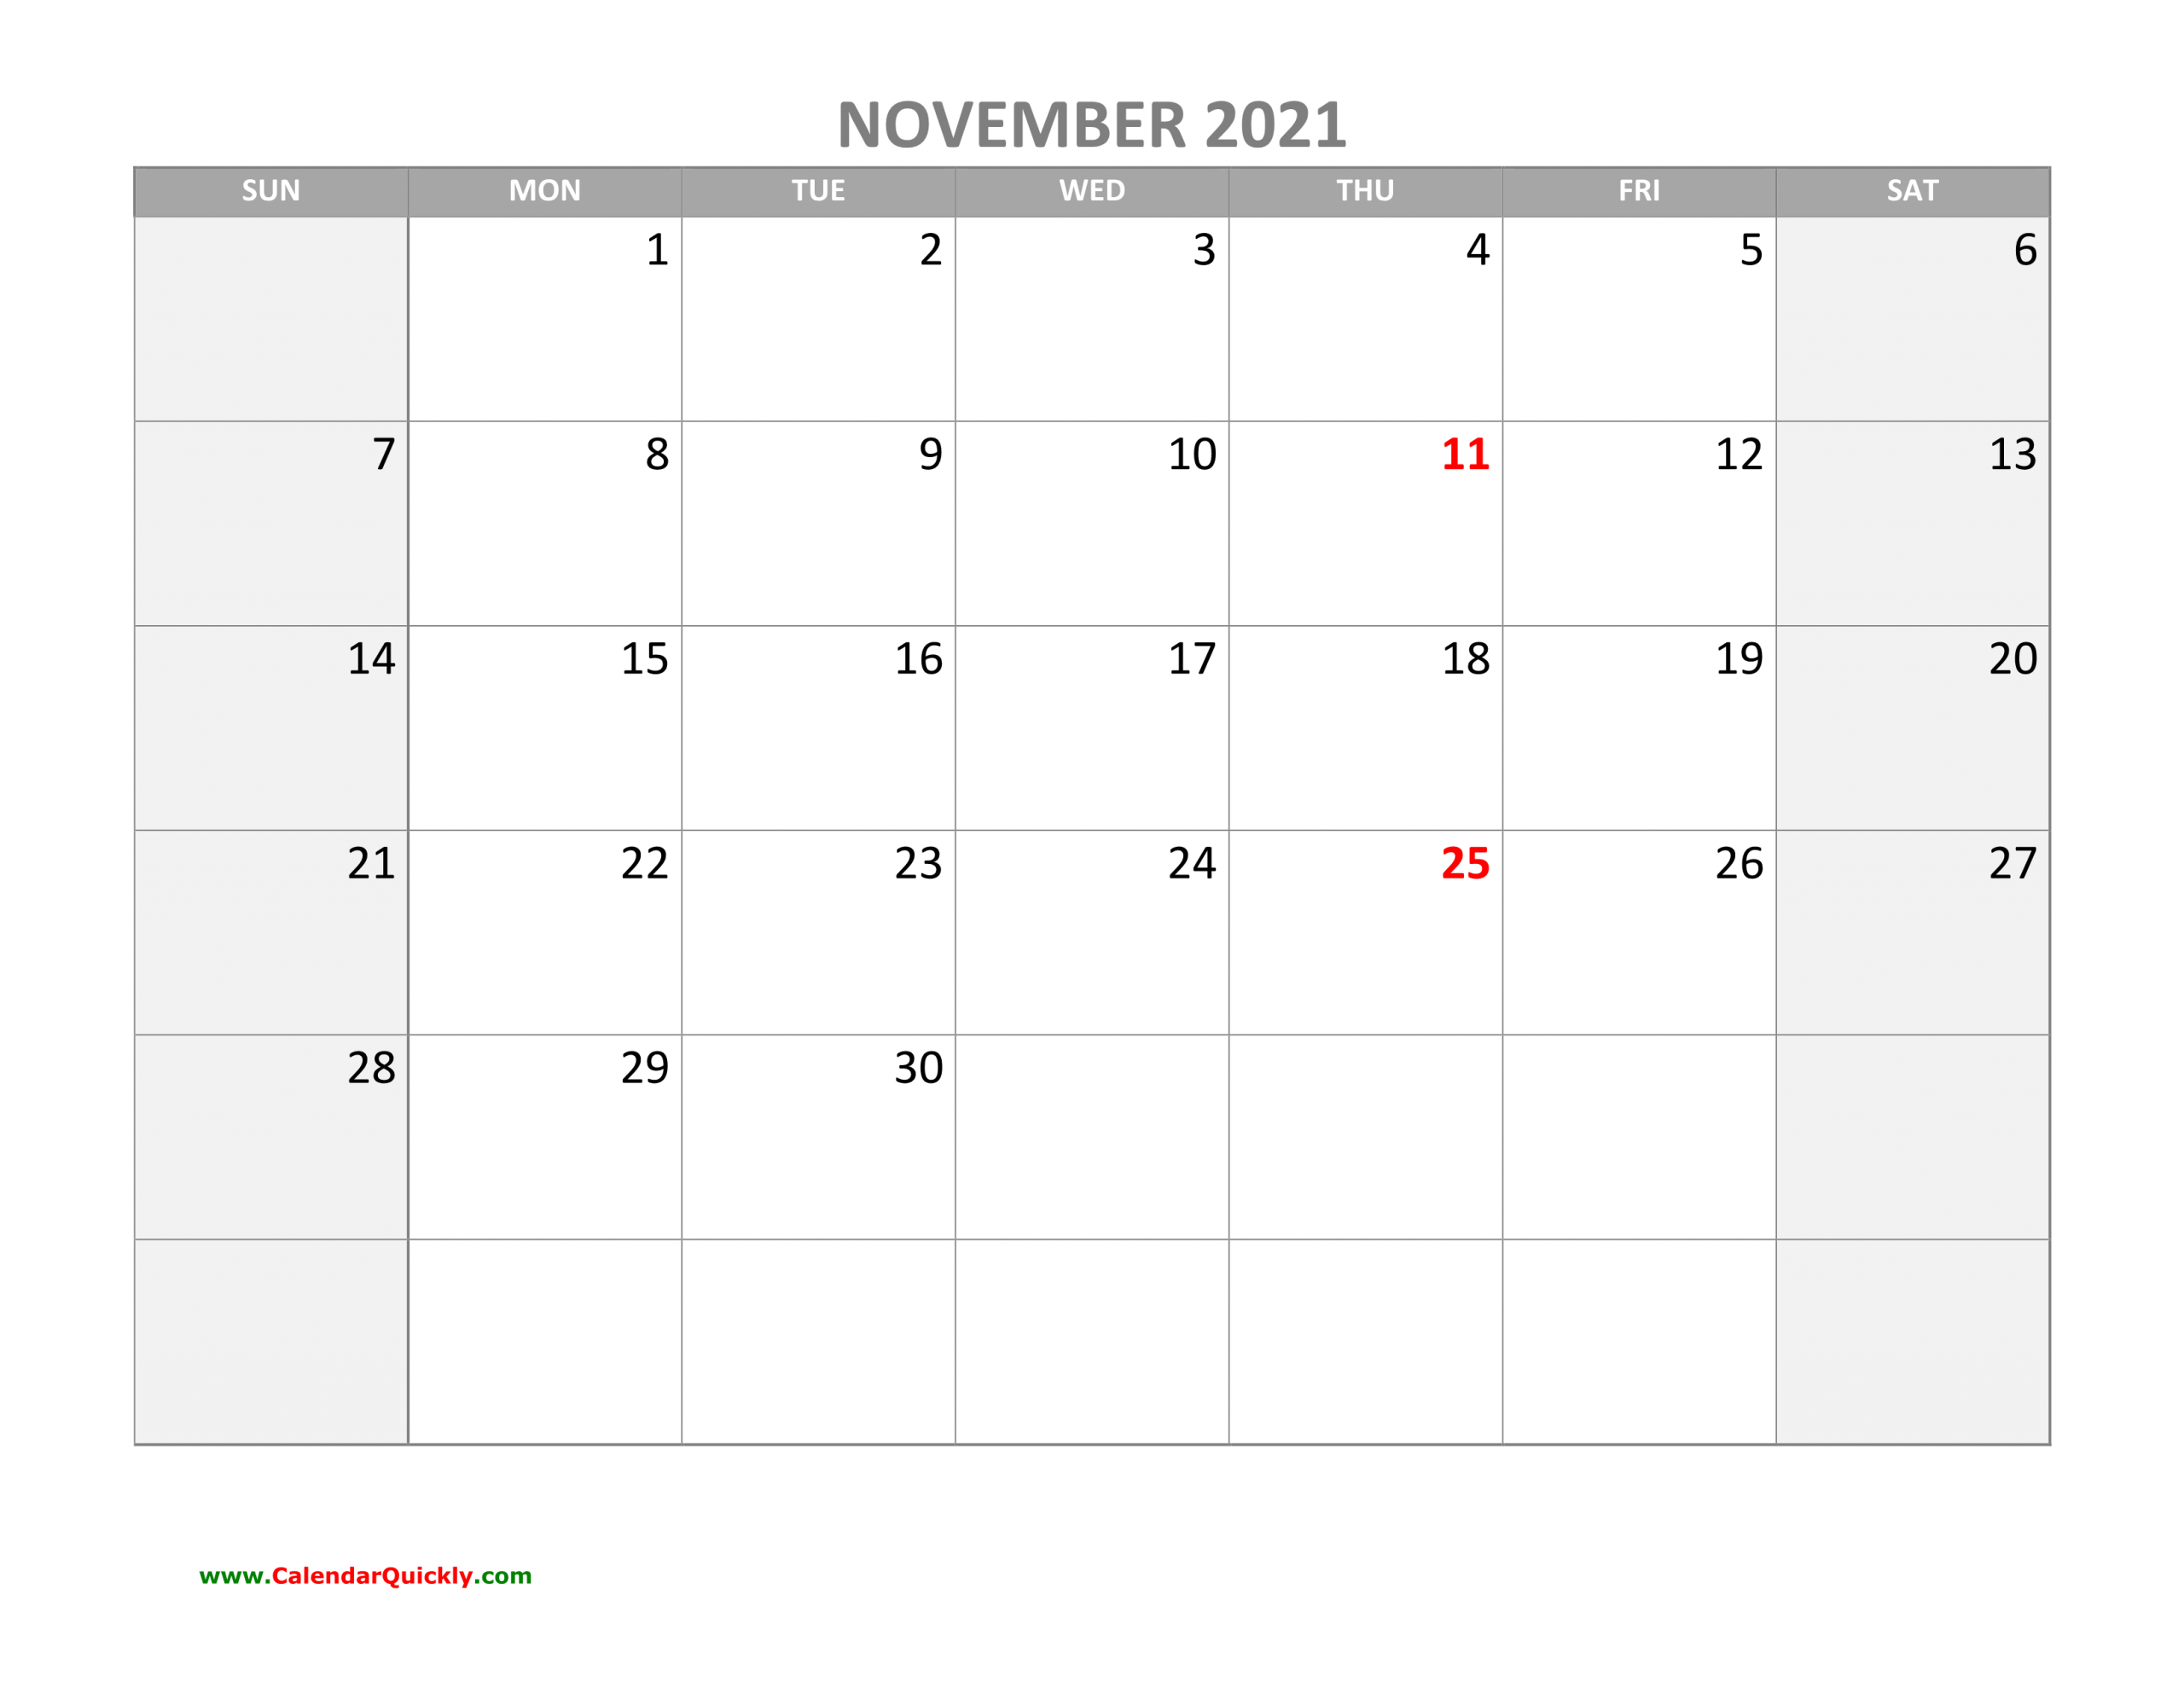 November Calendar 2021 With Holidays | Calendar Quickly November 2021 Calendar With Holidays Printable